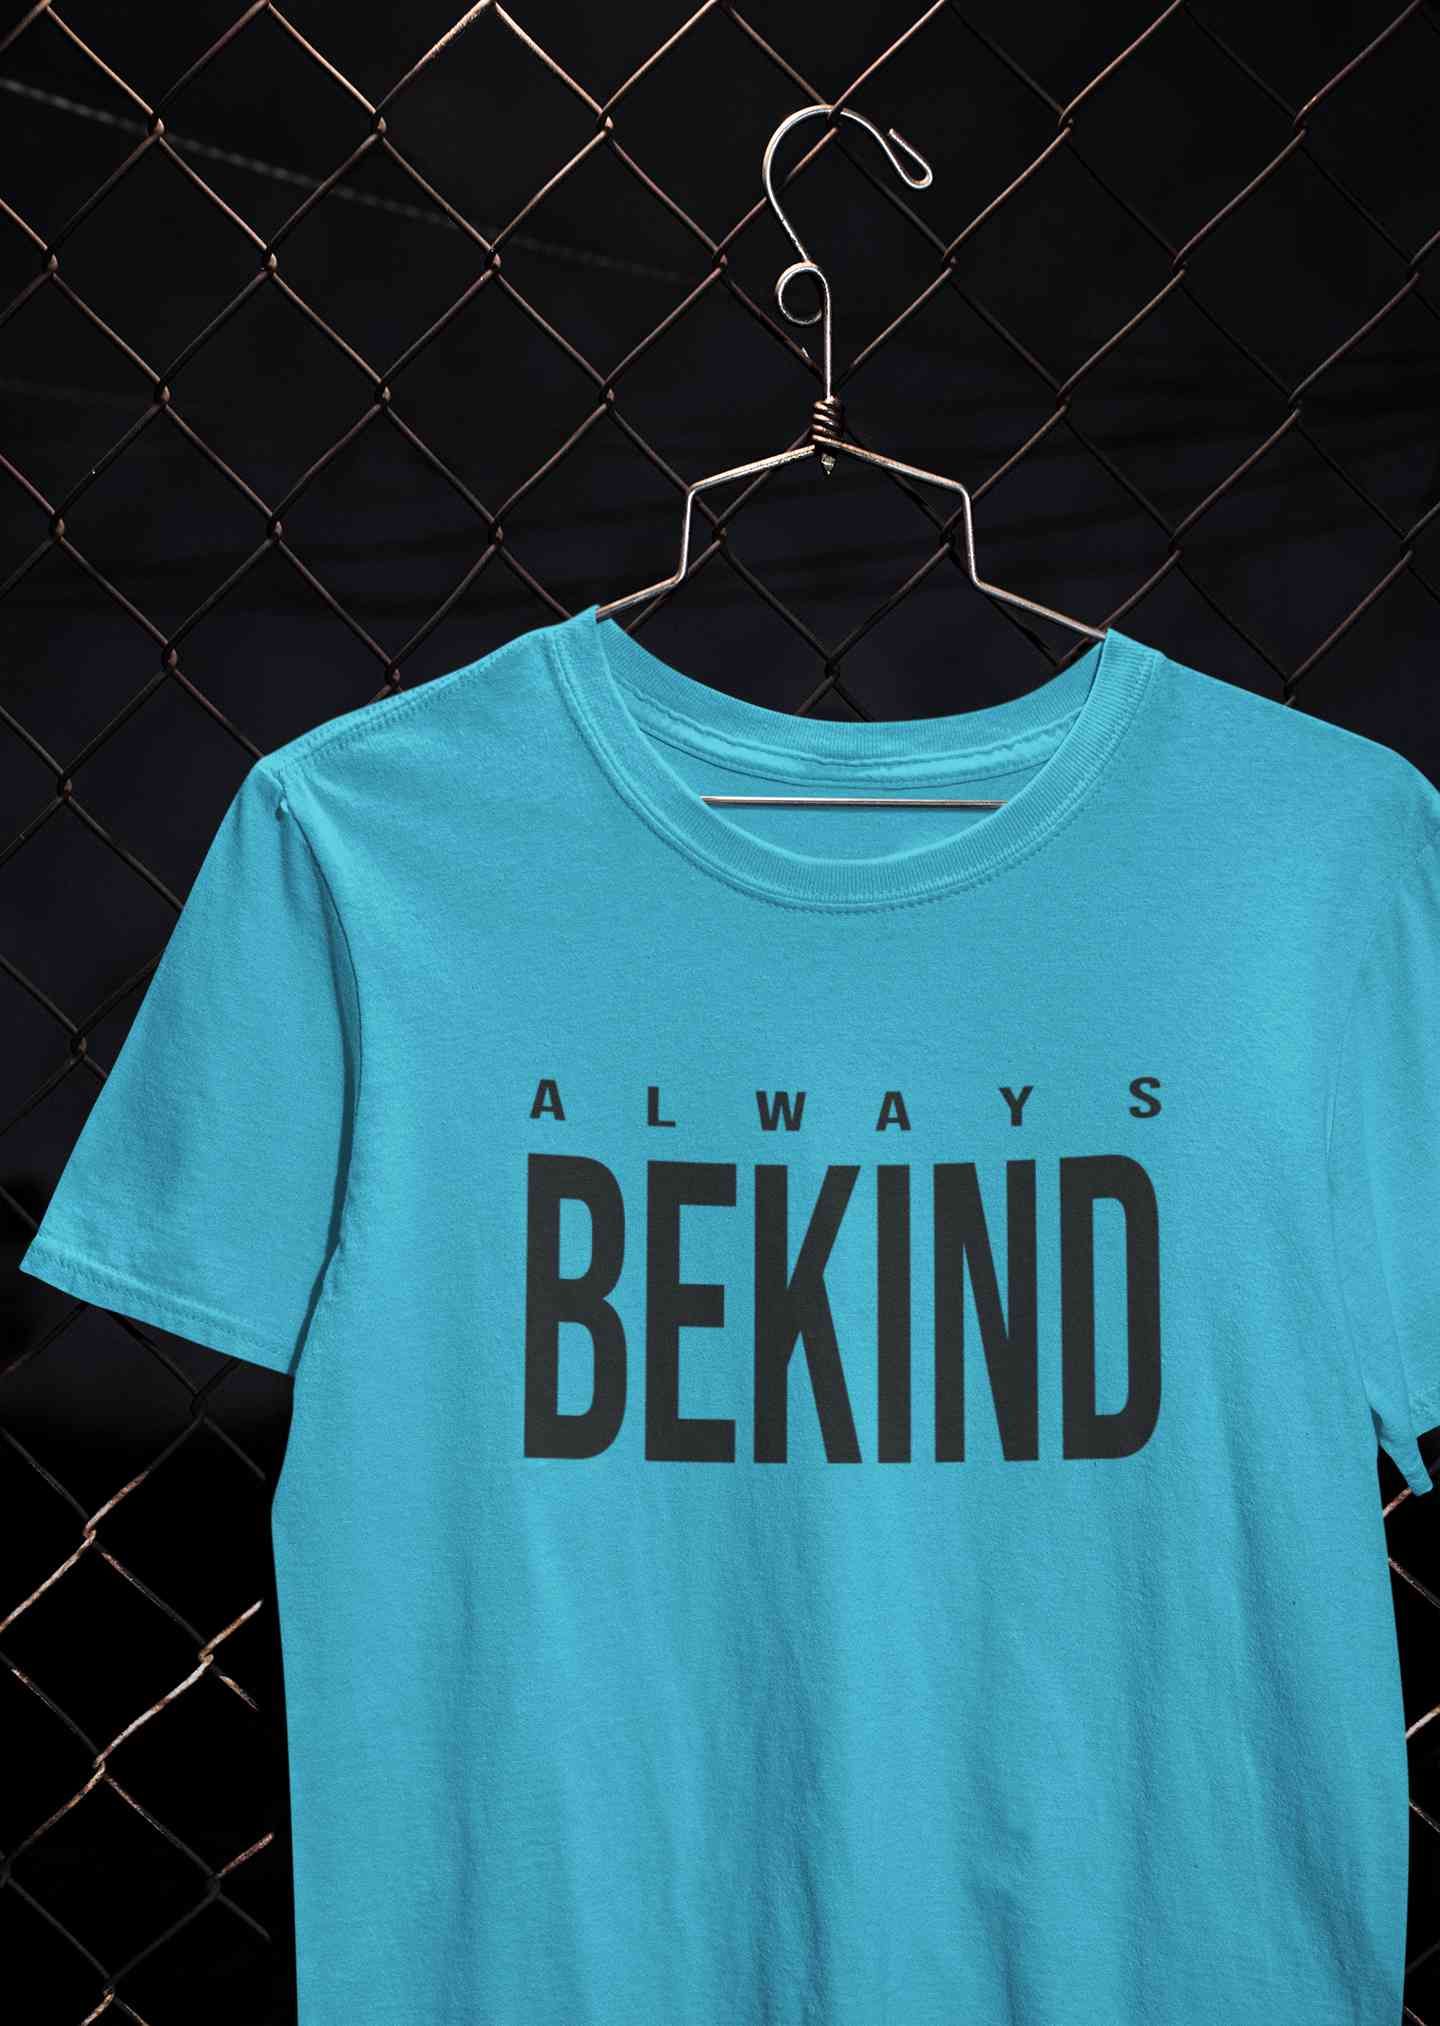 Always Bekind Women Half Sleeves T-shirt- FunkyTeesClub